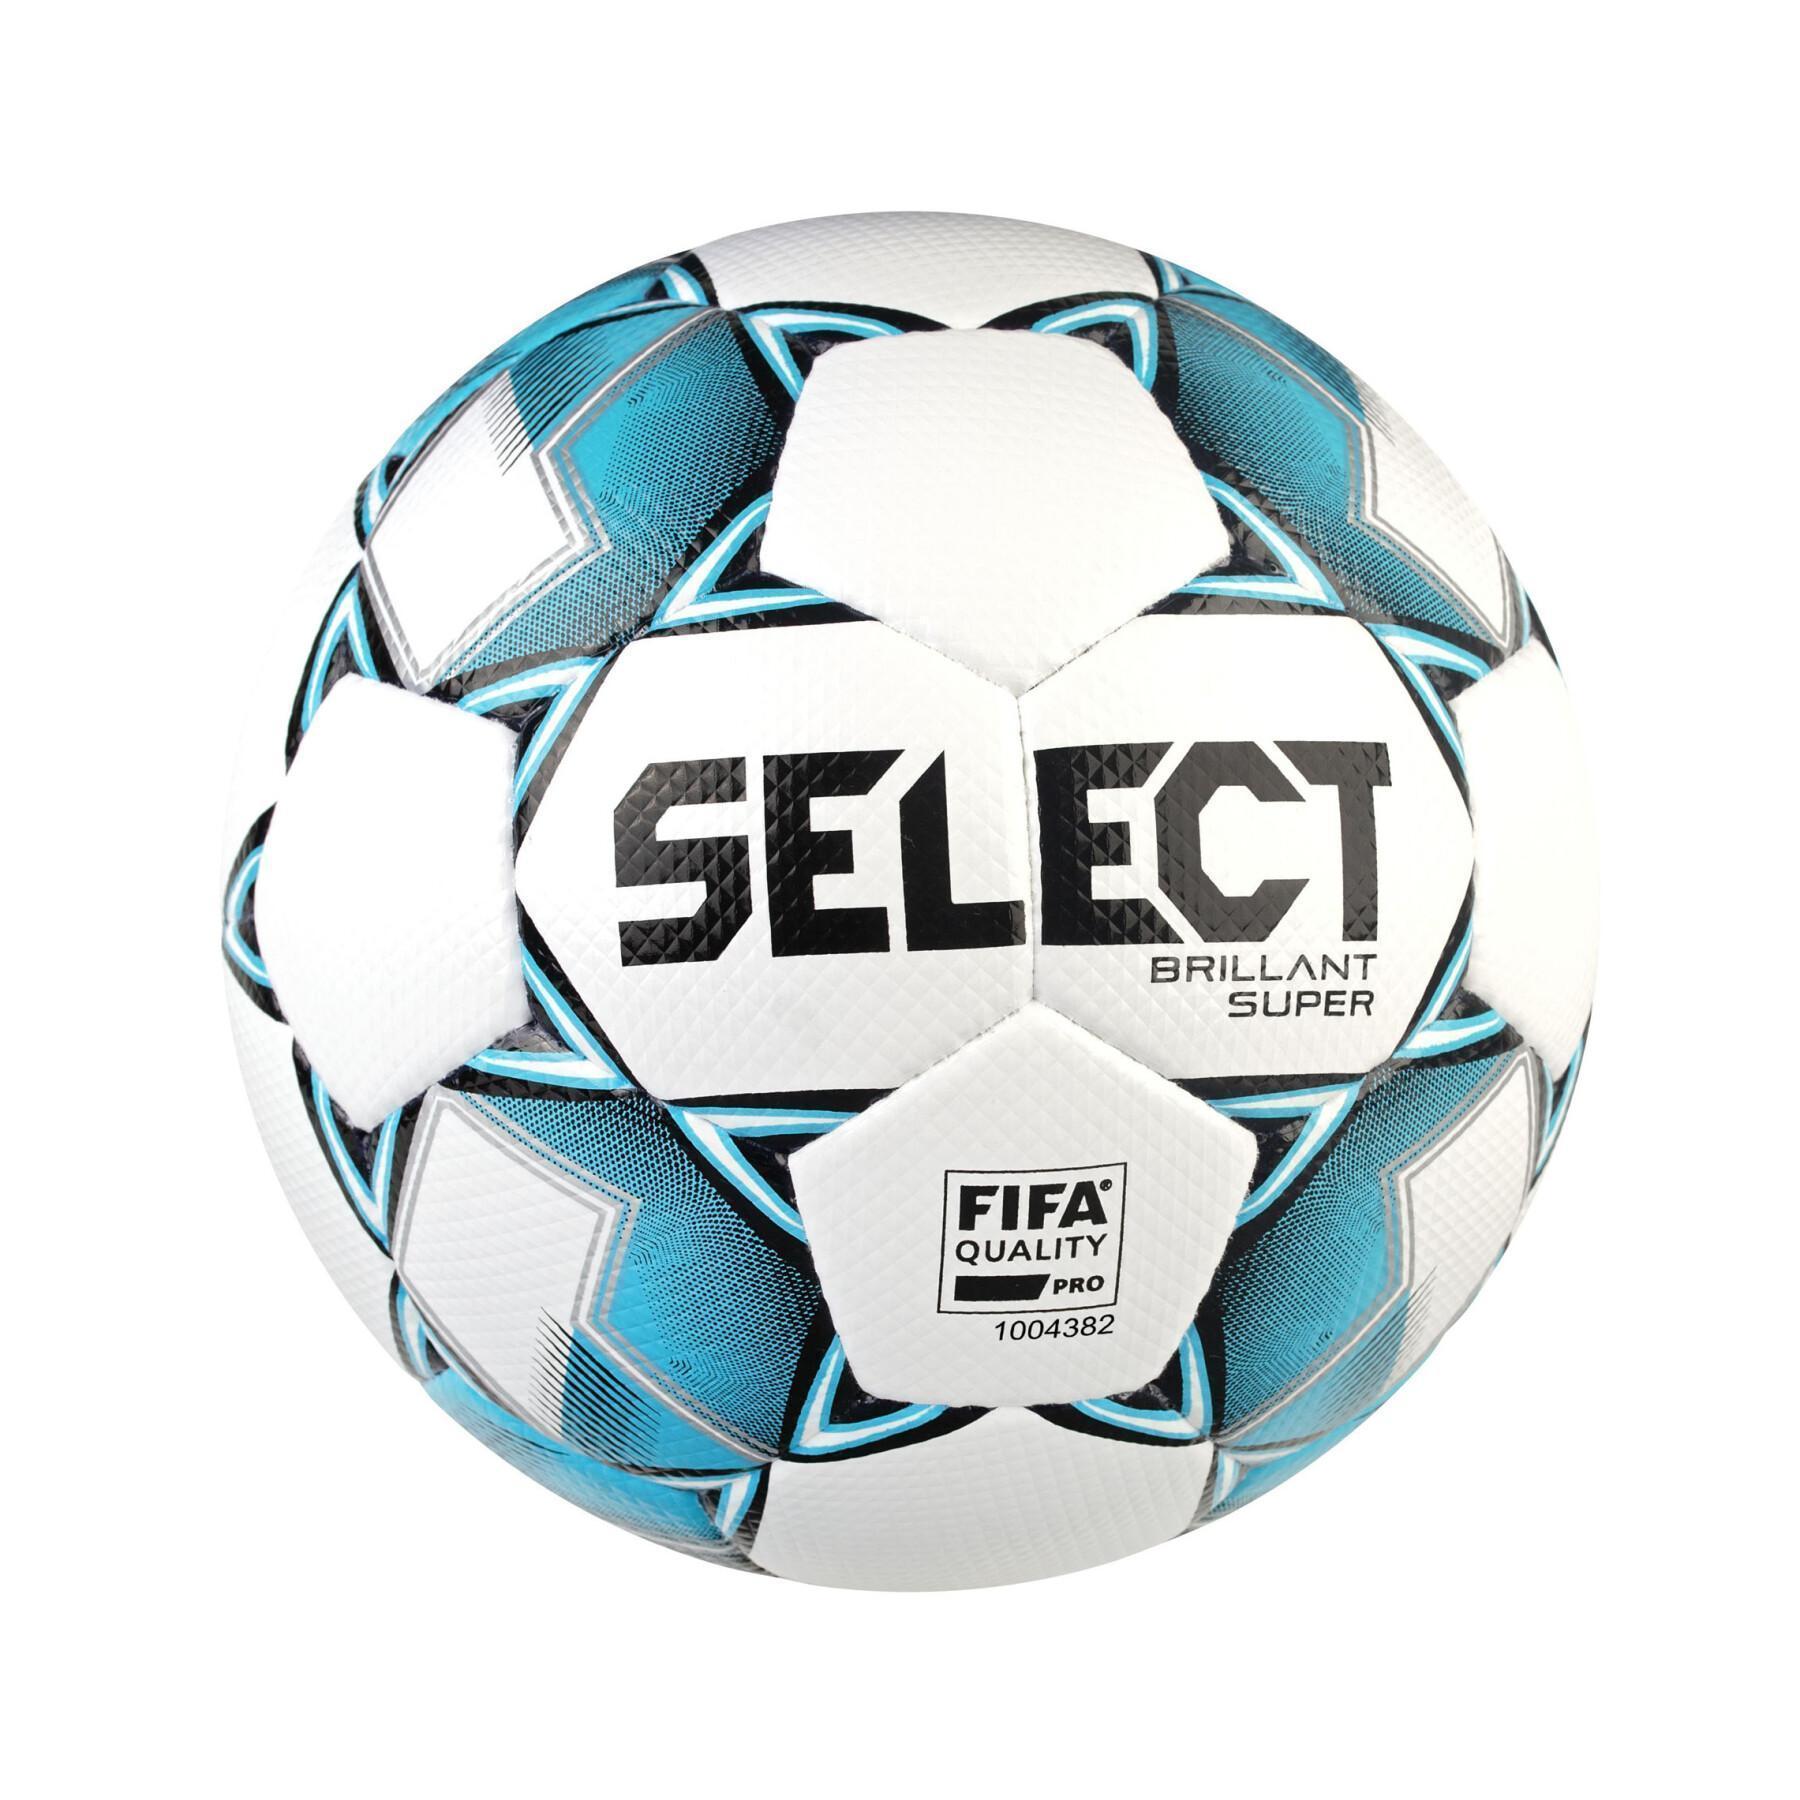 Balón Select fb brillante super v21